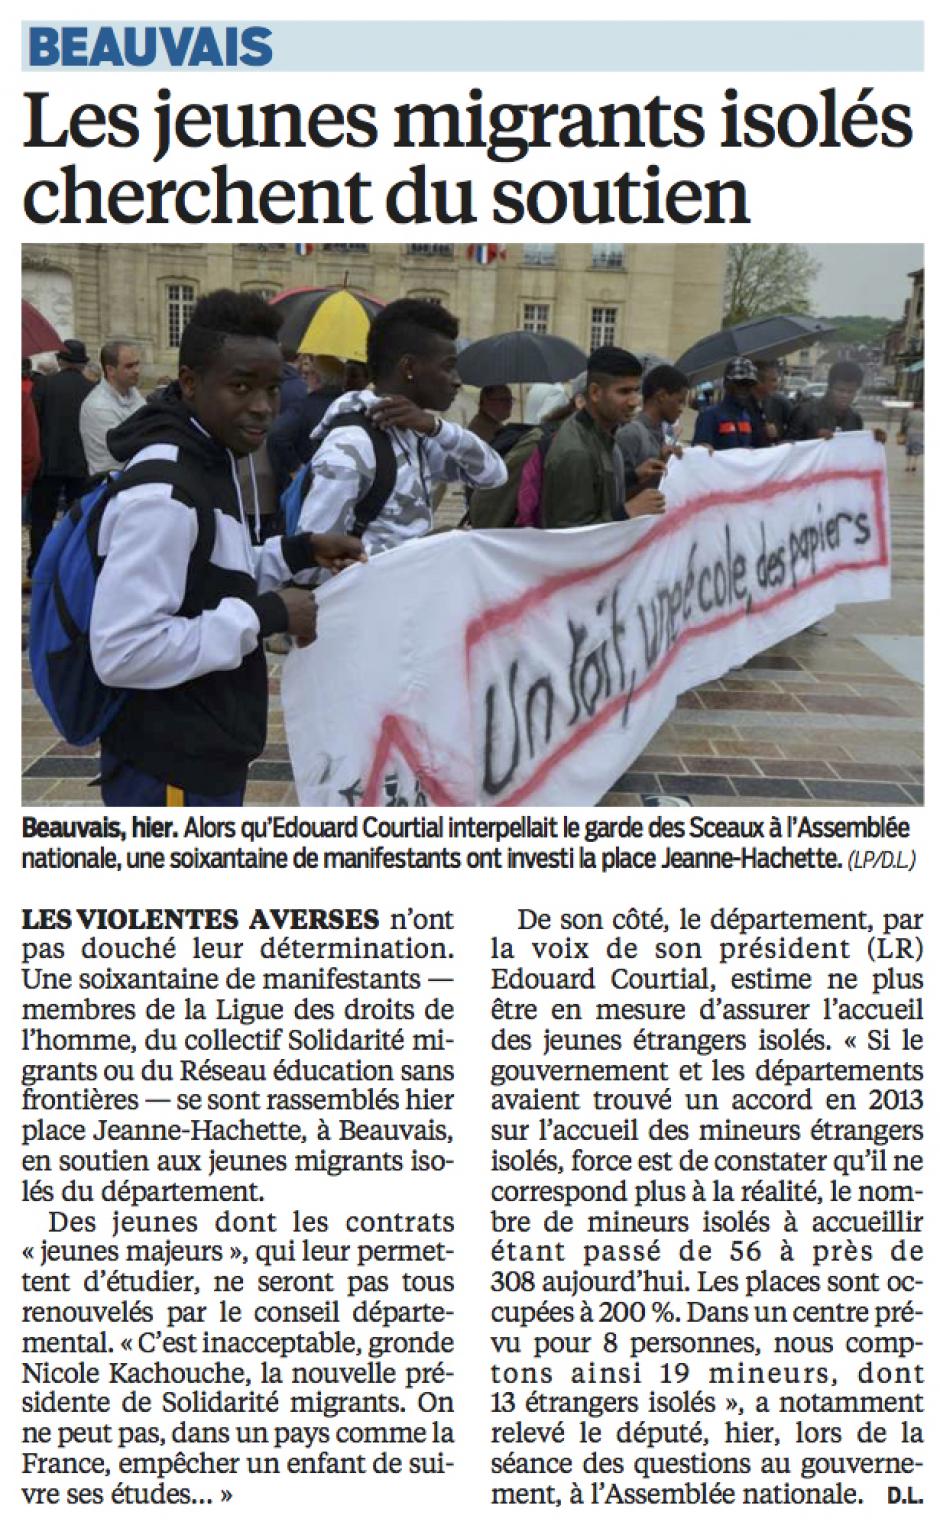 20160512-LeP-Beauvais-Les jeunes migrants isolés cherchent du soutien